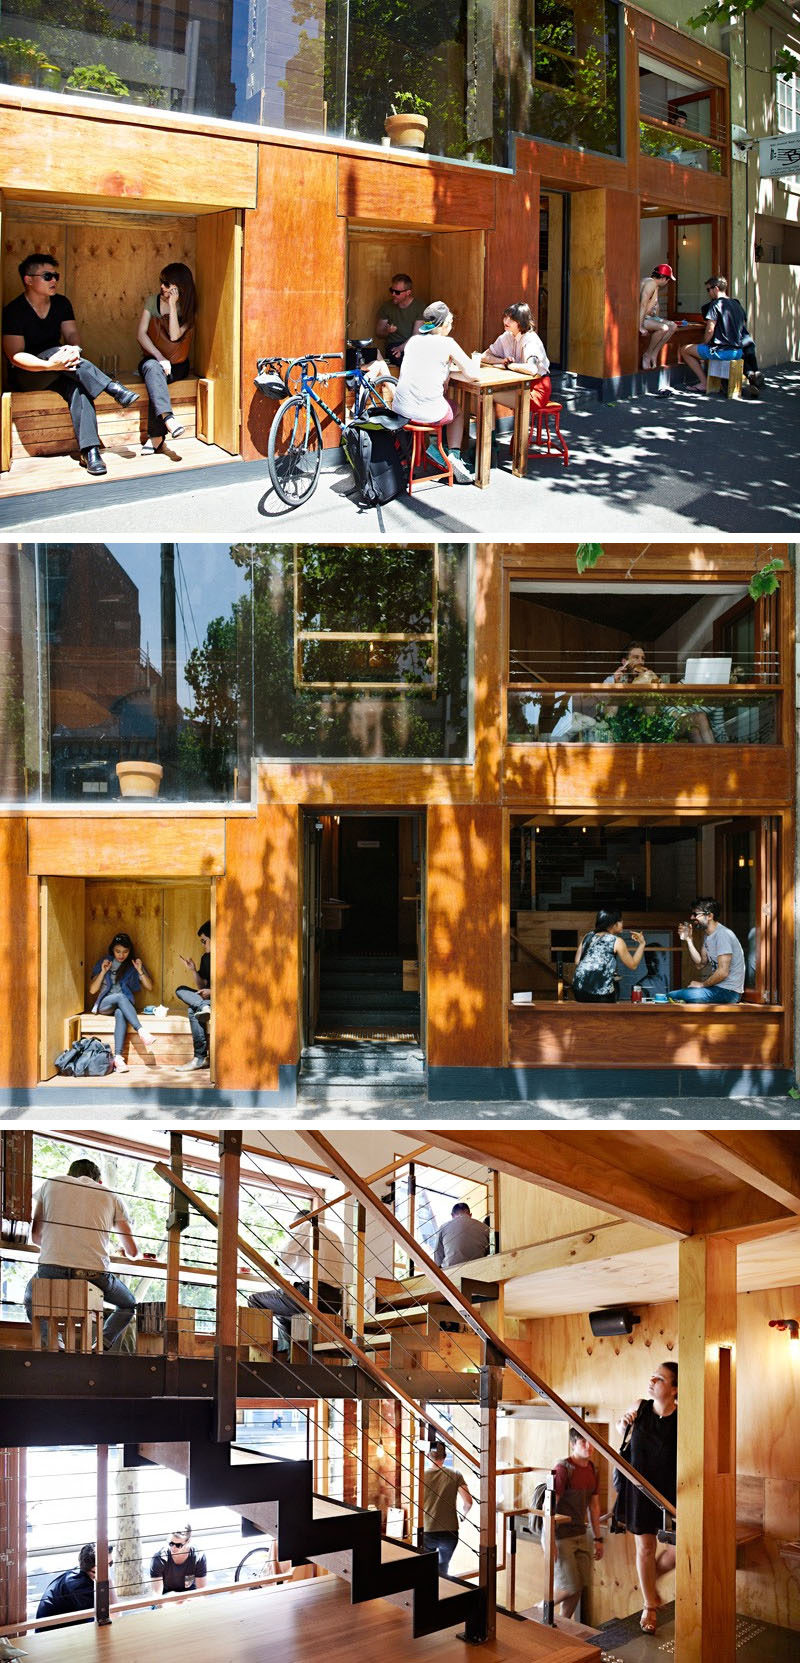 Это современное кафе имеет встроенные деревянные уголки для сидения снаружи кафе, а внутри люди сидят в барах, глядя на улицу.